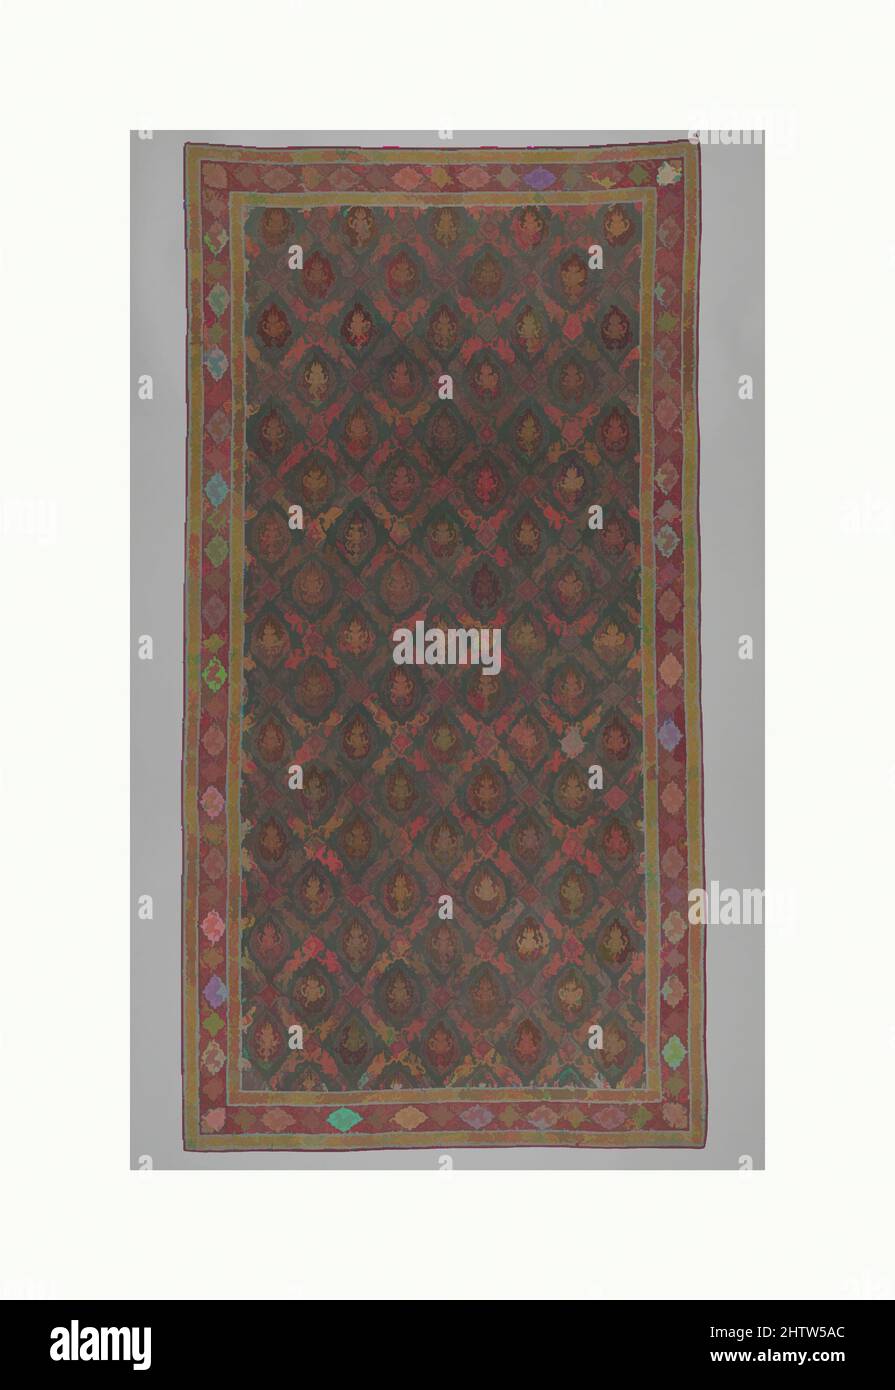 Arte ispirata da Floor Covering o Hanging (Pha Kiao), 18th secolo, India (Costa di Coromandel), per il mercato thailandese, cotone (resiste dipinte e mordenti, tinte), totale: 83 x 43 1/8 pollici (210,8 x 109,5 cm), tessuti dipinti e stampati, tessuti di lusso in cotone dipinto commissionato espressamente, opere classiche modernizzate da Artotop con un tuffo di modernità. Forme, colore e valore, impatto visivo accattivante sulle emozioni artistiche attraverso la libertà delle opere d'arte in modo contemporaneo. Un messaggio senza tempo che persegue una nuova direzione selvaggiamente creativa. Artisti che si rivolgono al supporto digitale e creano l'NFT Artotop Foto Stock